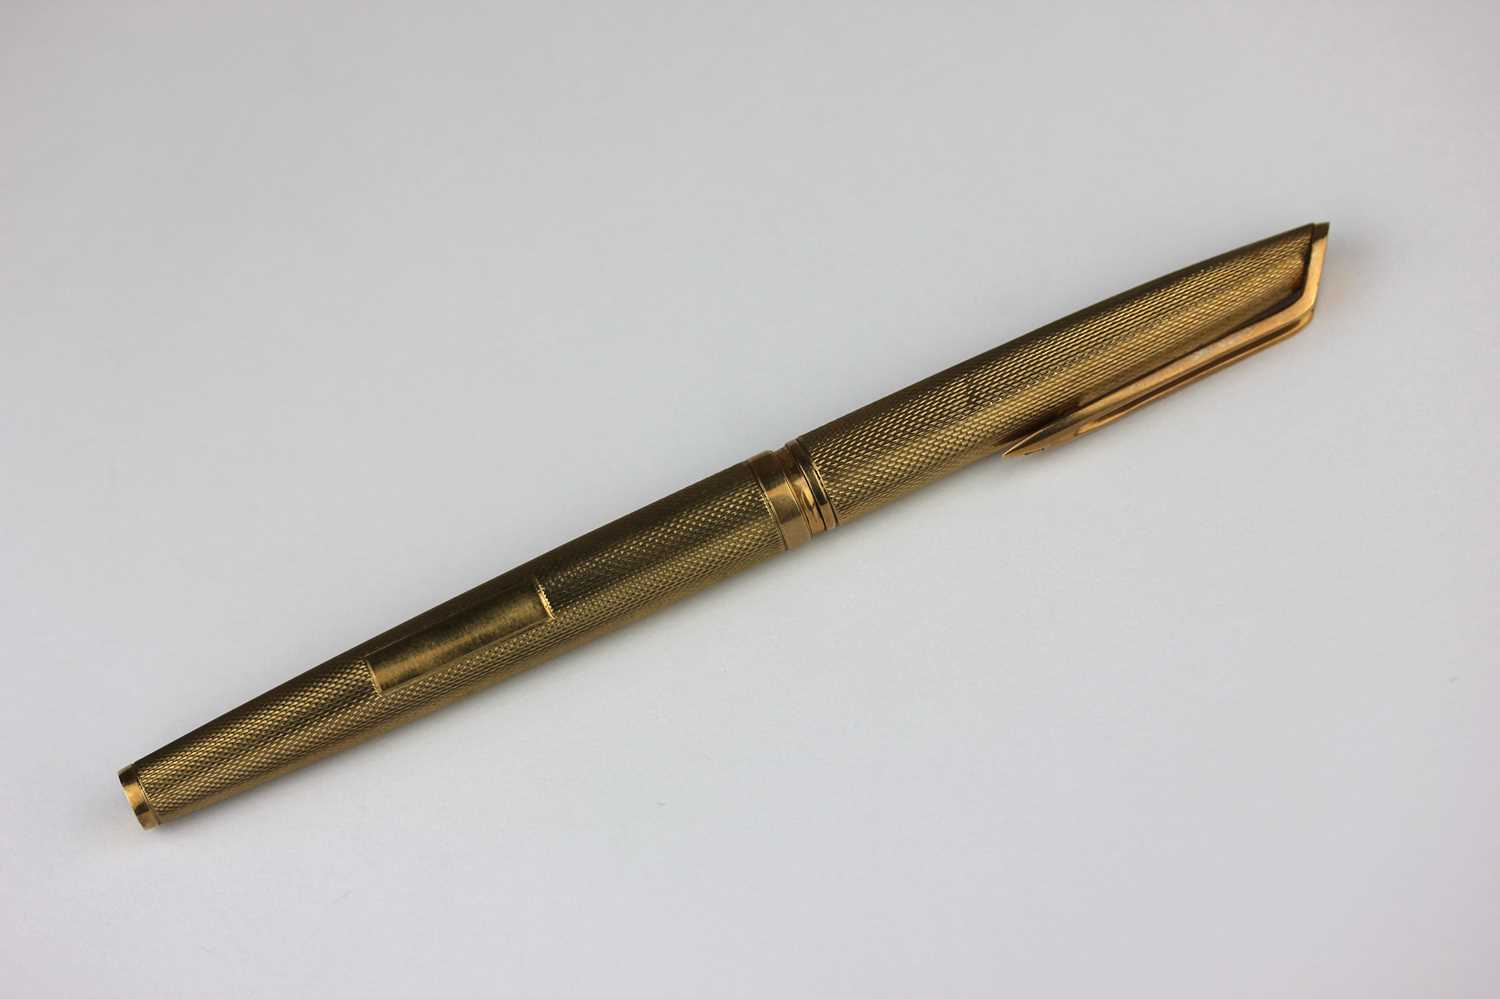 A Watermans 9ct gold fountain pen gross weight 23.6g